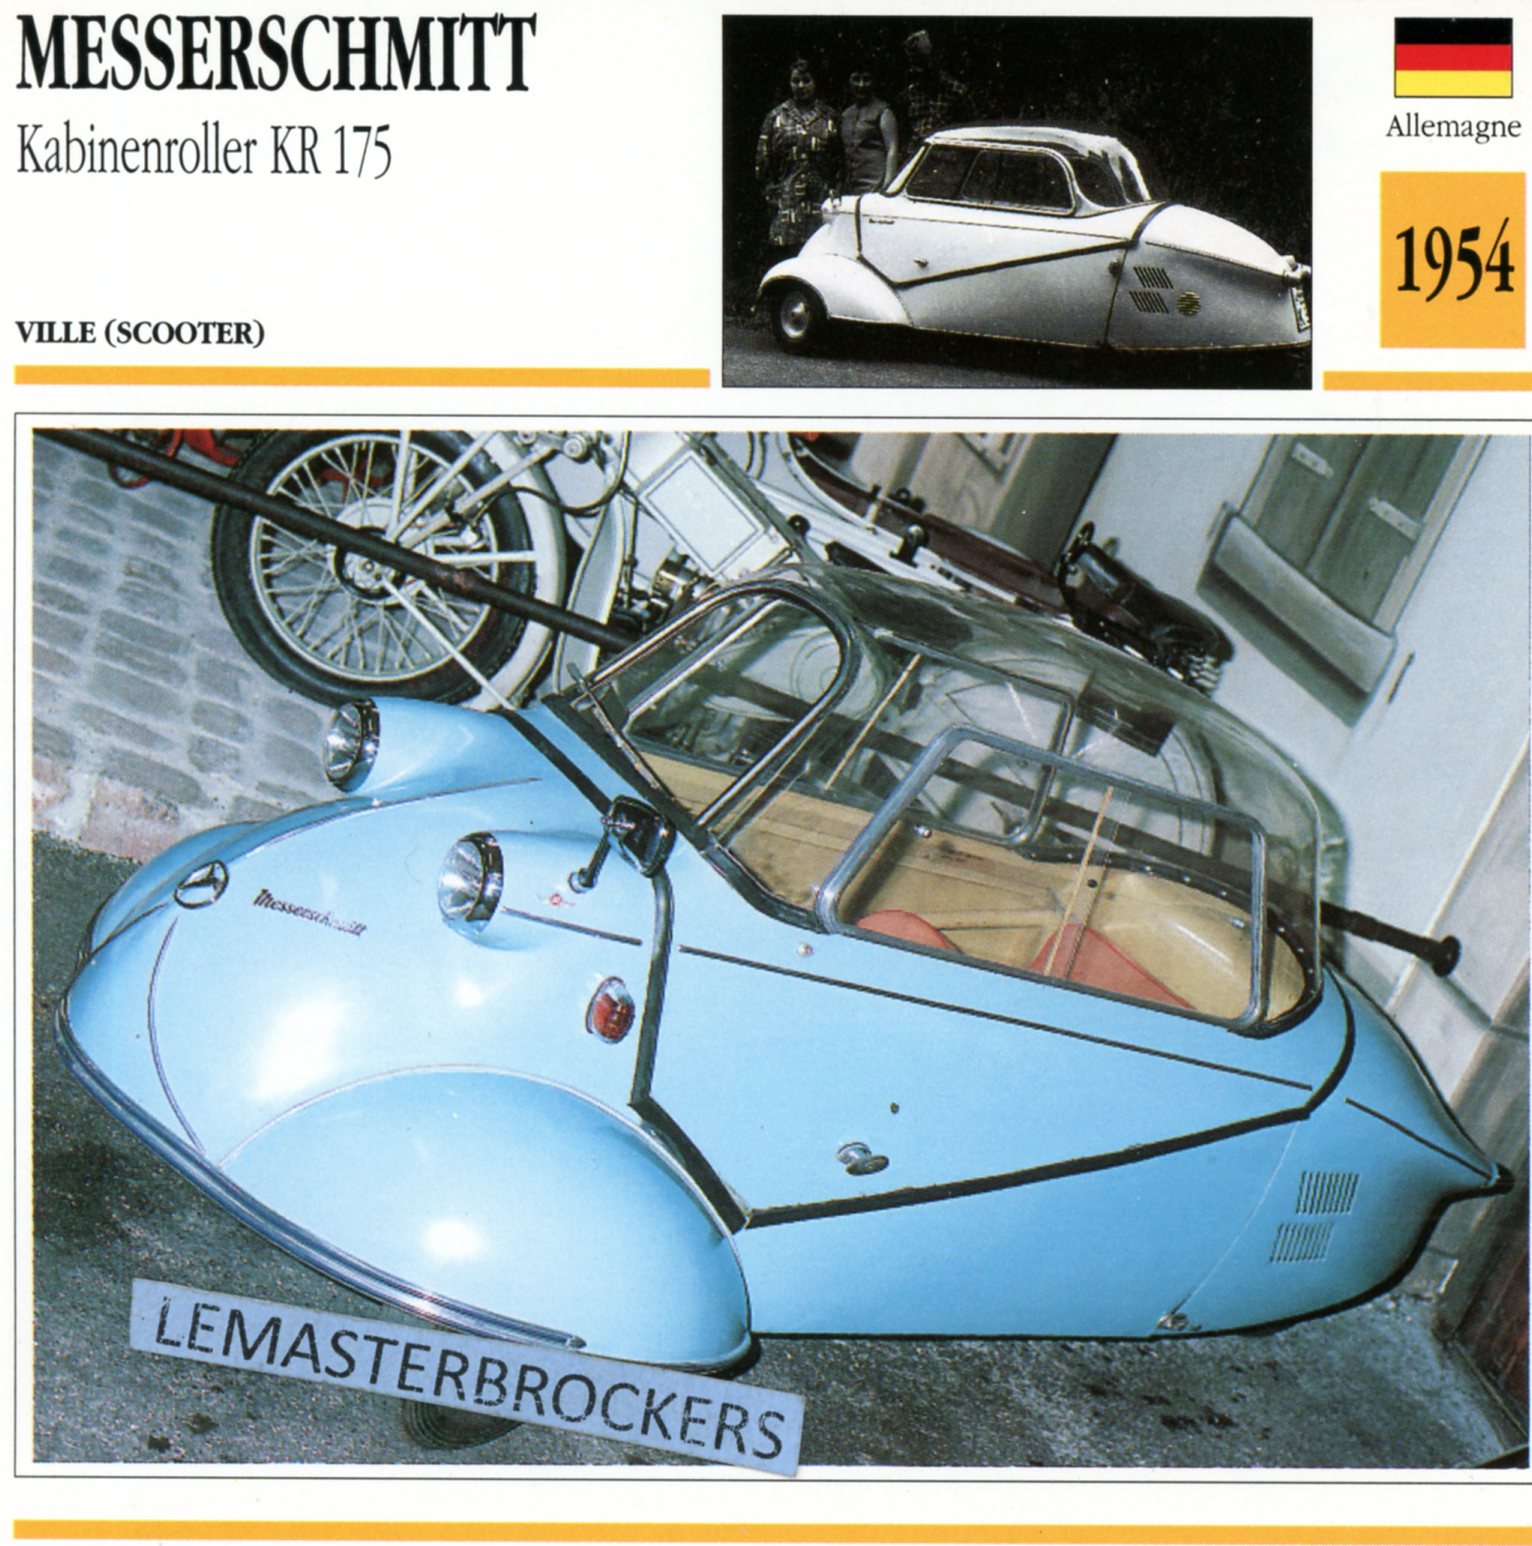 MESSERSCHMITT KR 175 KABINENROLLER 1954 - CARTE CARD FICHE MOTO CARACTERISTIQUES